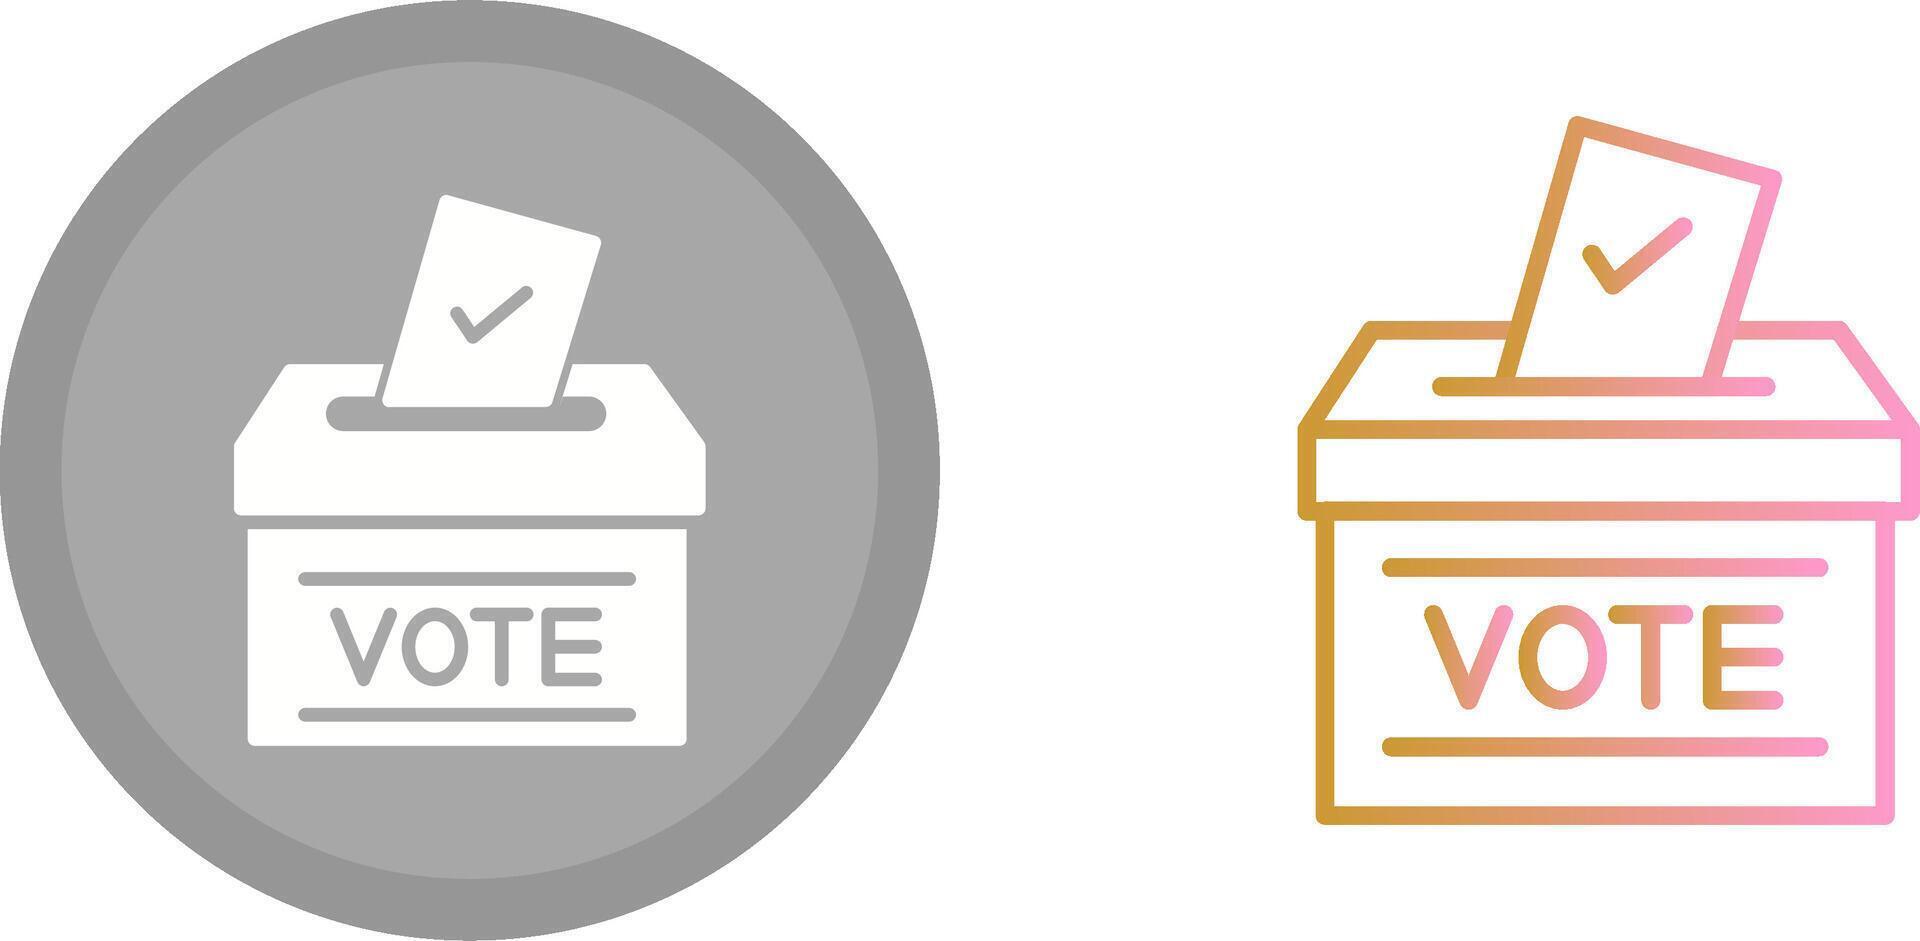 conception d'icône de bulletin de vote vecteur